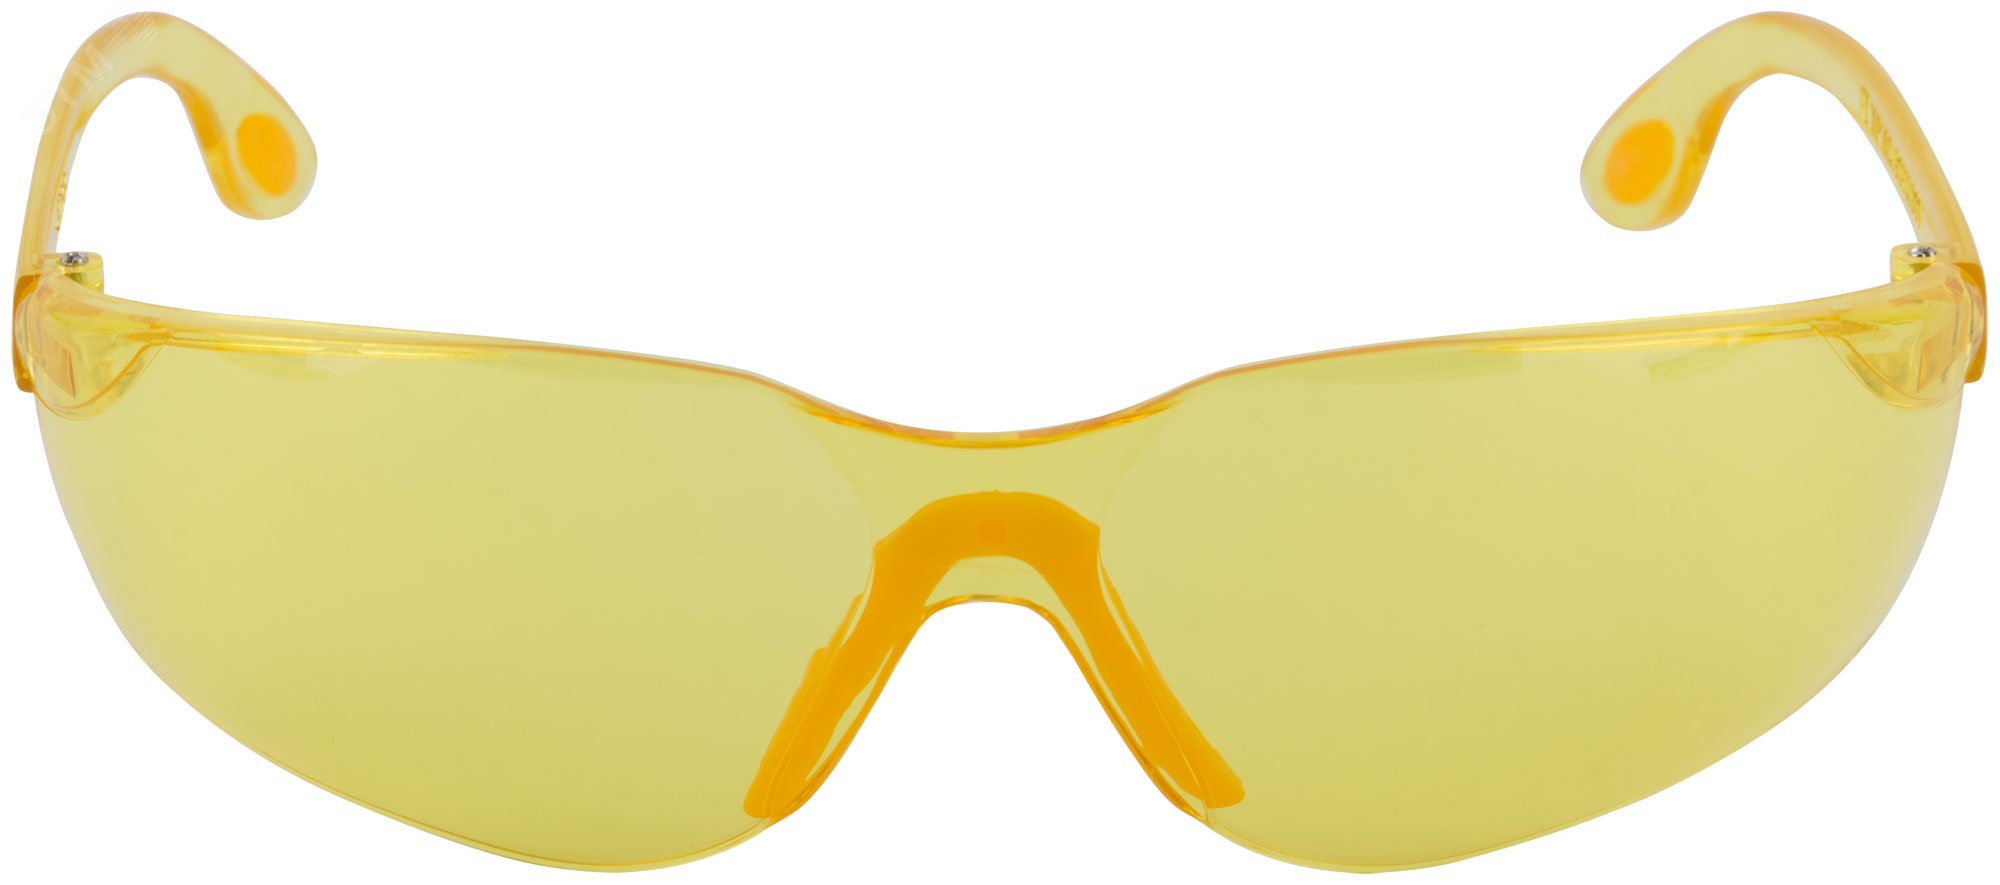 Очки защитные с дужками желтые 12227 FIT РОС - превью 2